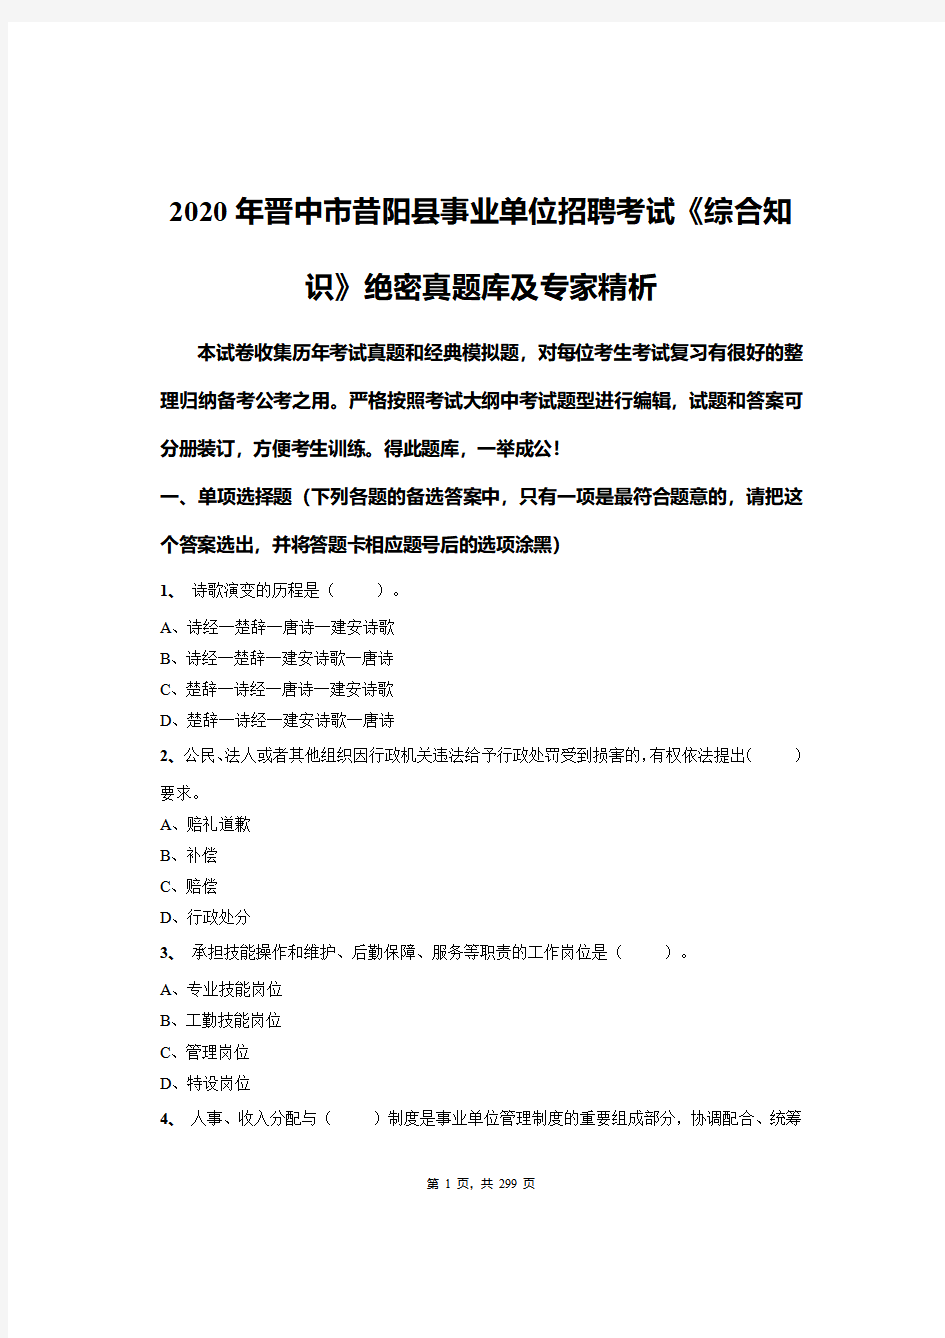 2020年晋中市昔阳县事业单位招聘考试《综合知识》绝密真题库及专家精析(1)